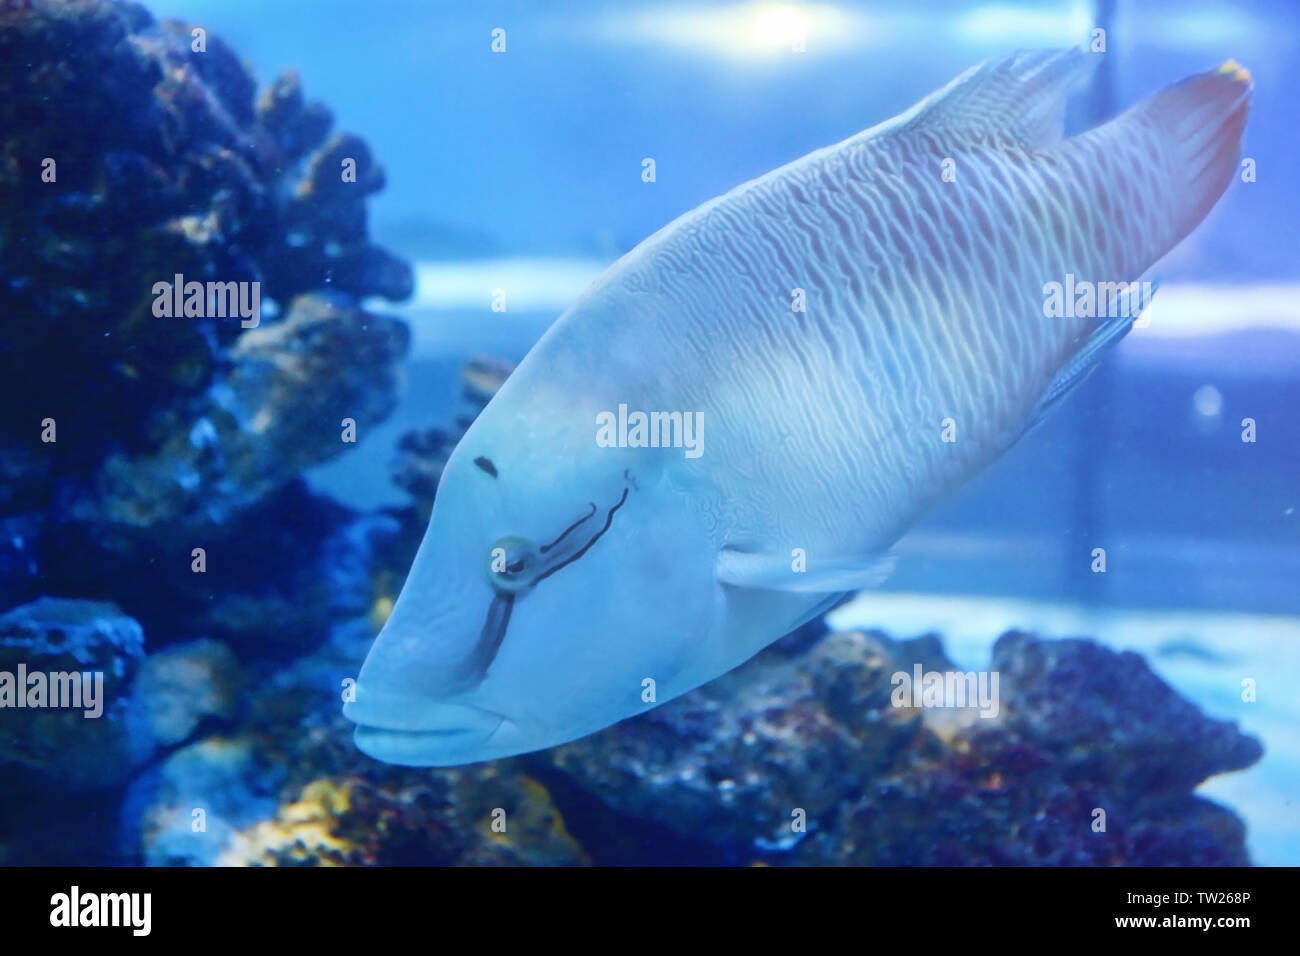 Exotic sea fish in aquarium Stock Photo